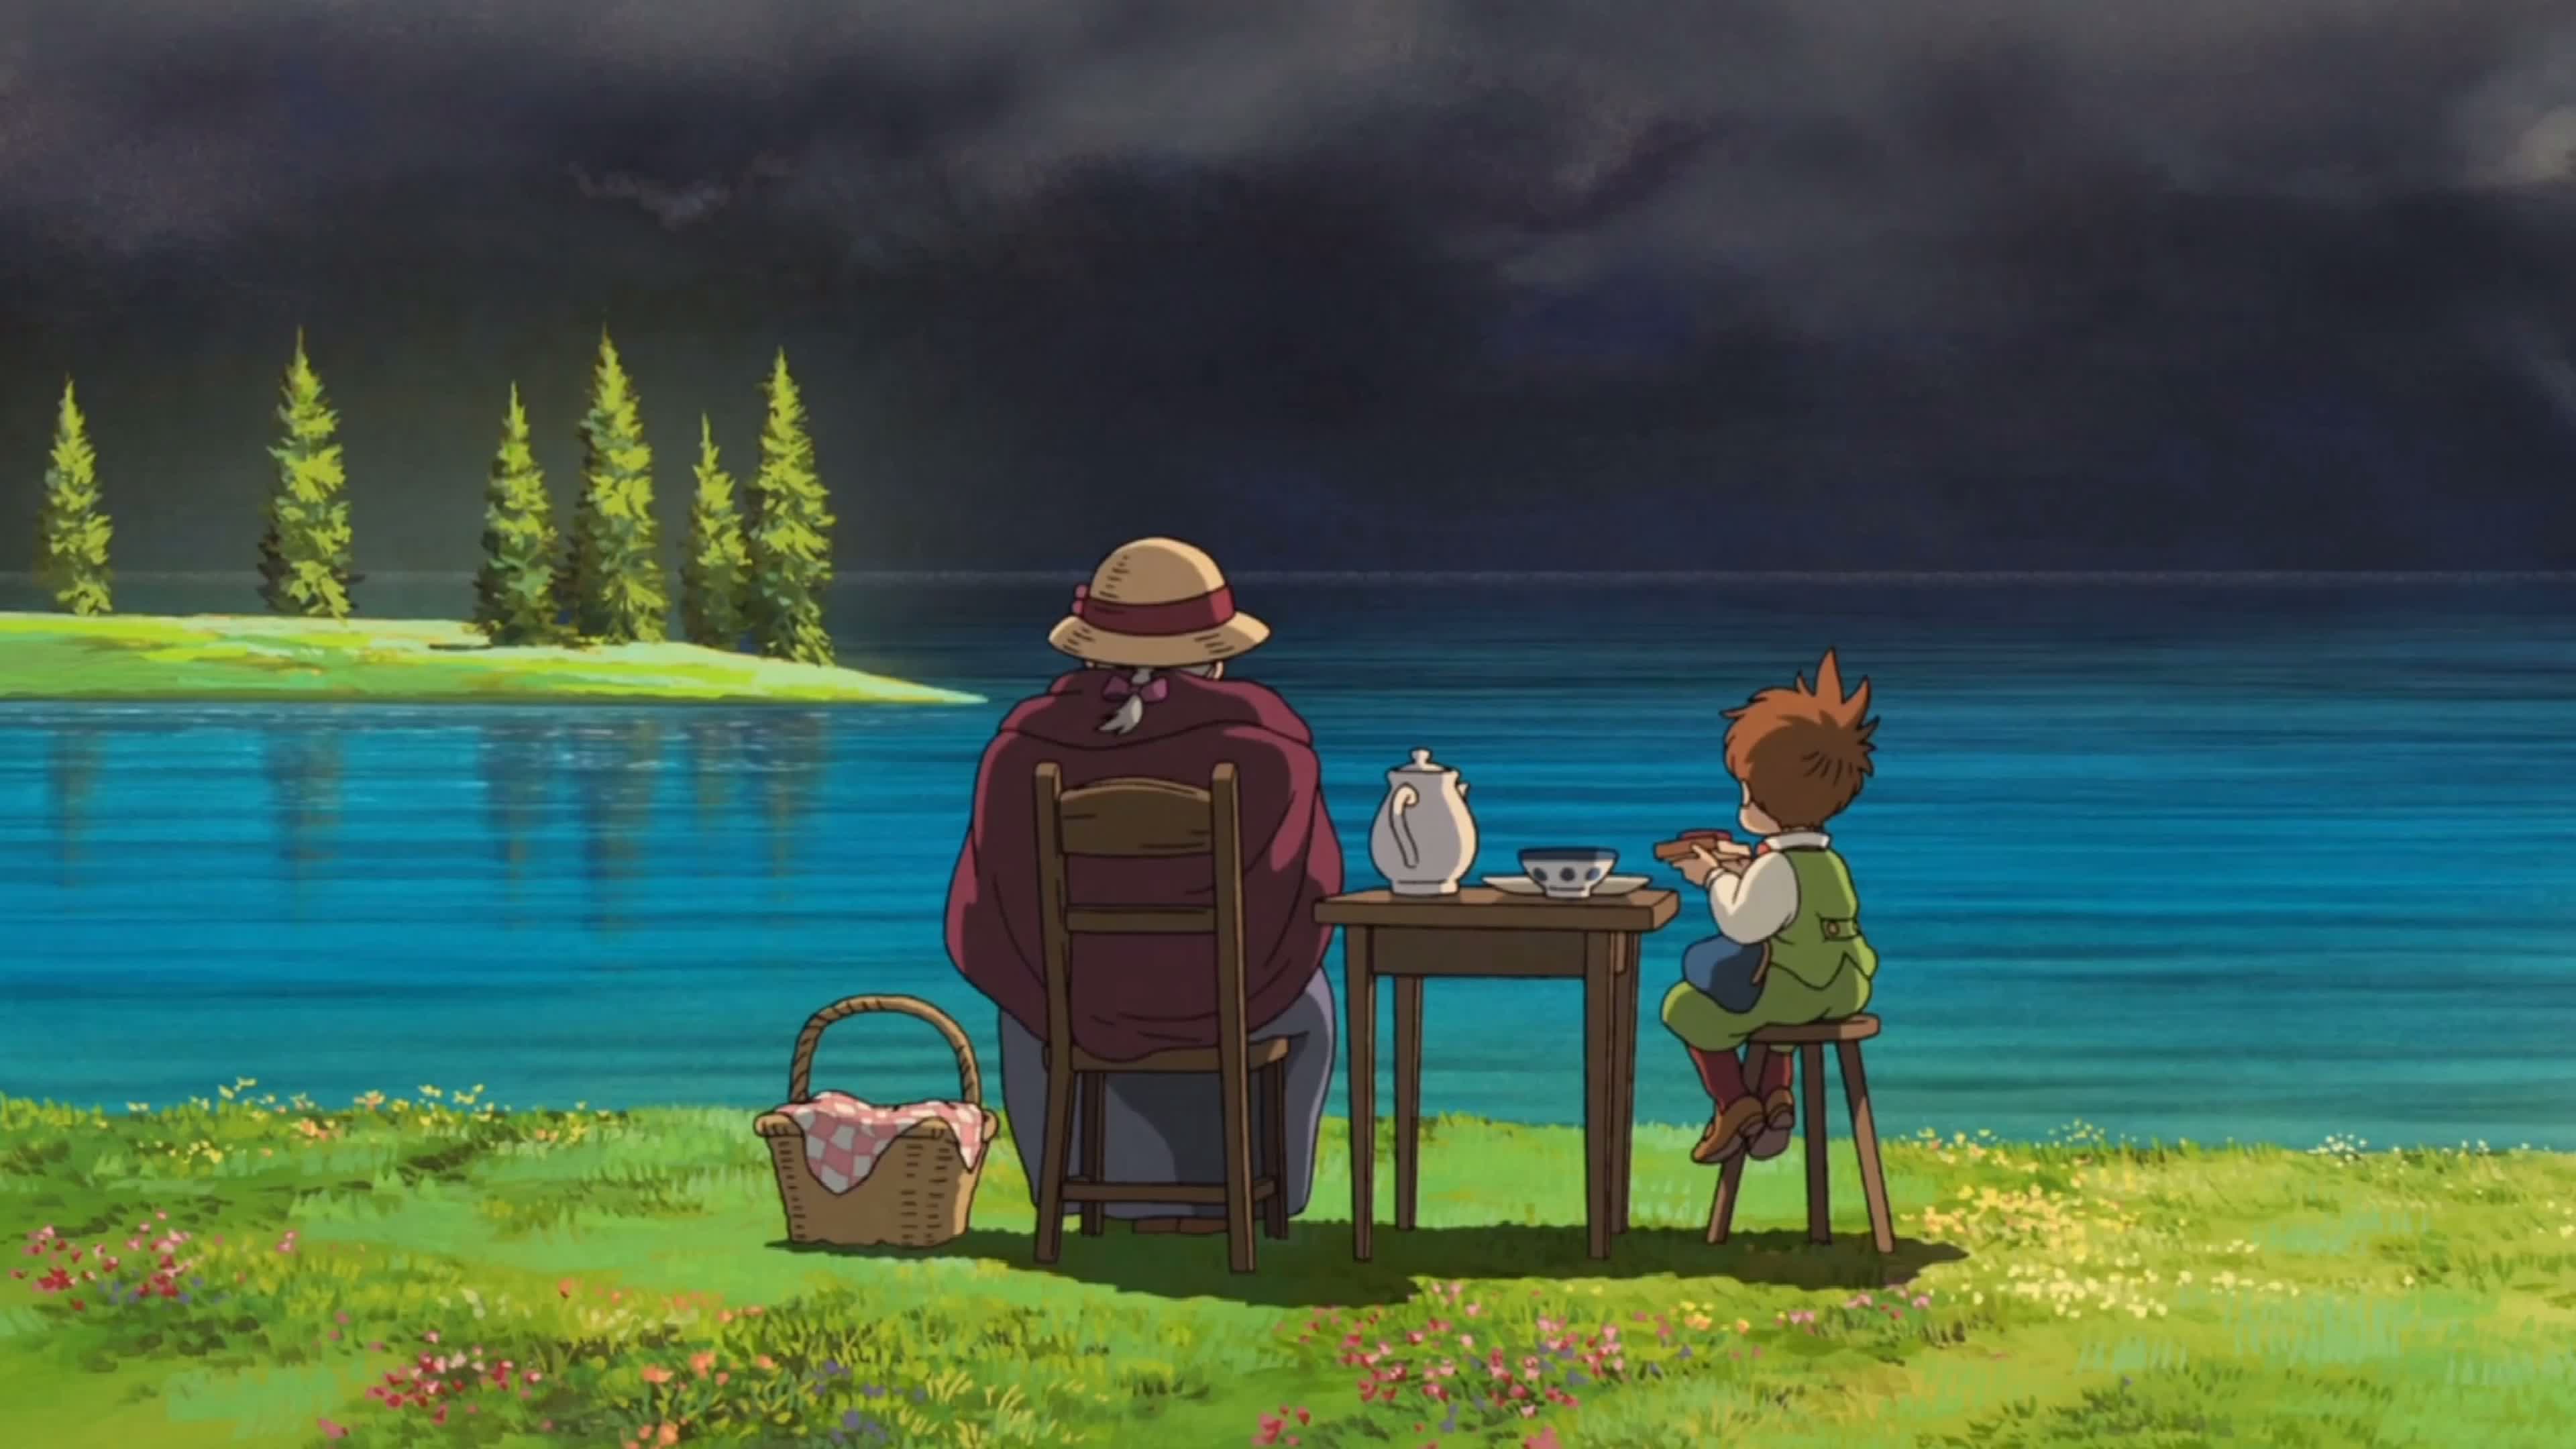 【宫崎骏动漫剪辑】愿你年老时也依旧充满对生活的爱